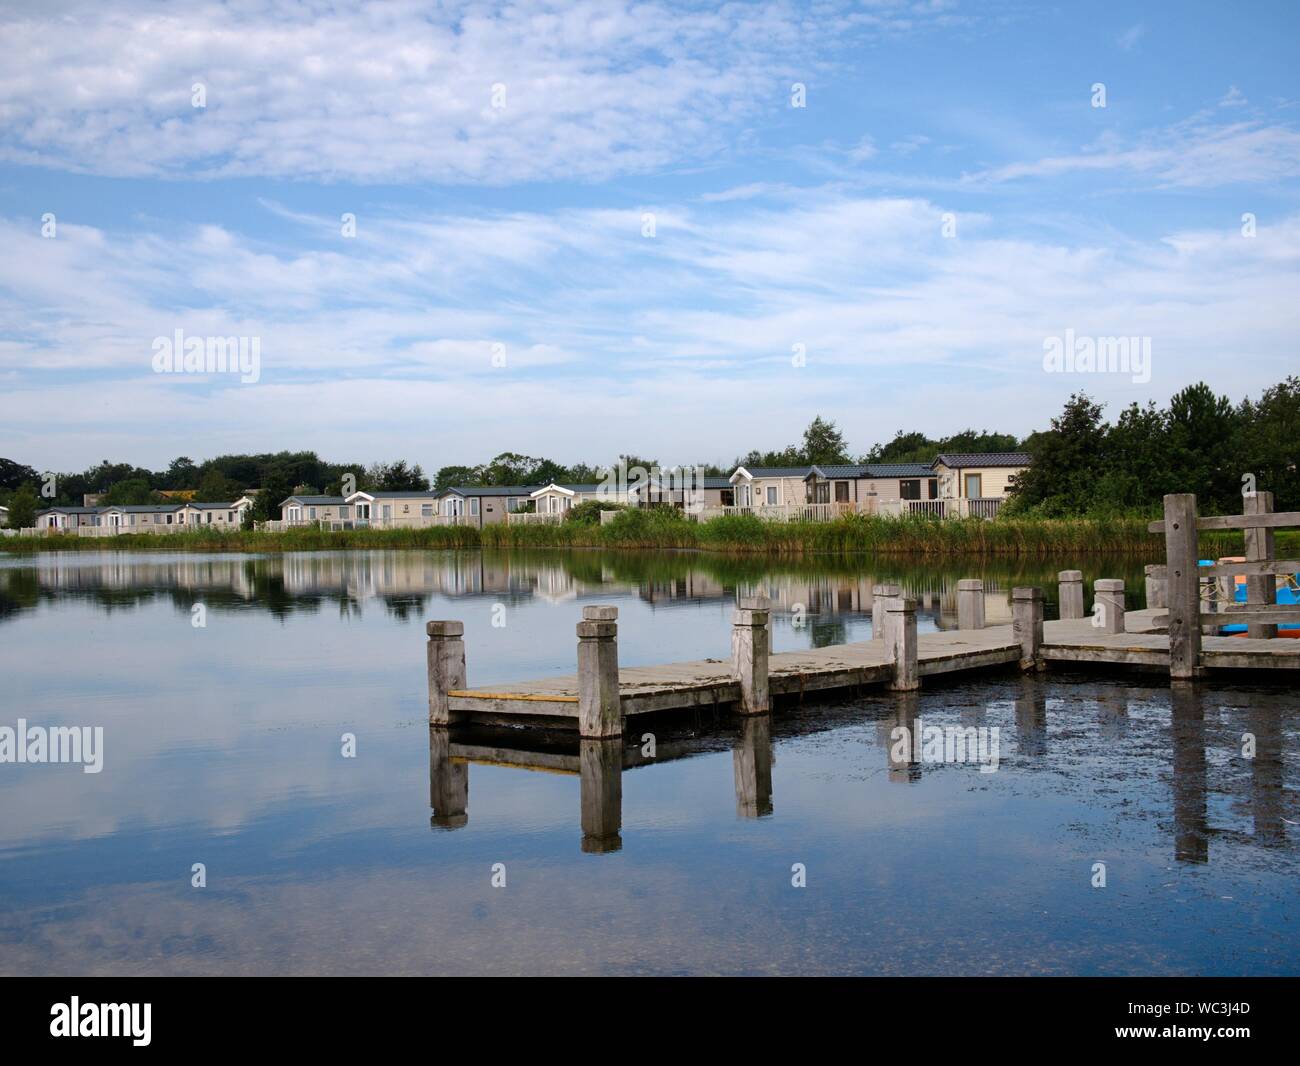 Pontile in legno sul lago con canne lungo la riva e vacanze roulotte e ombre Foto Stock